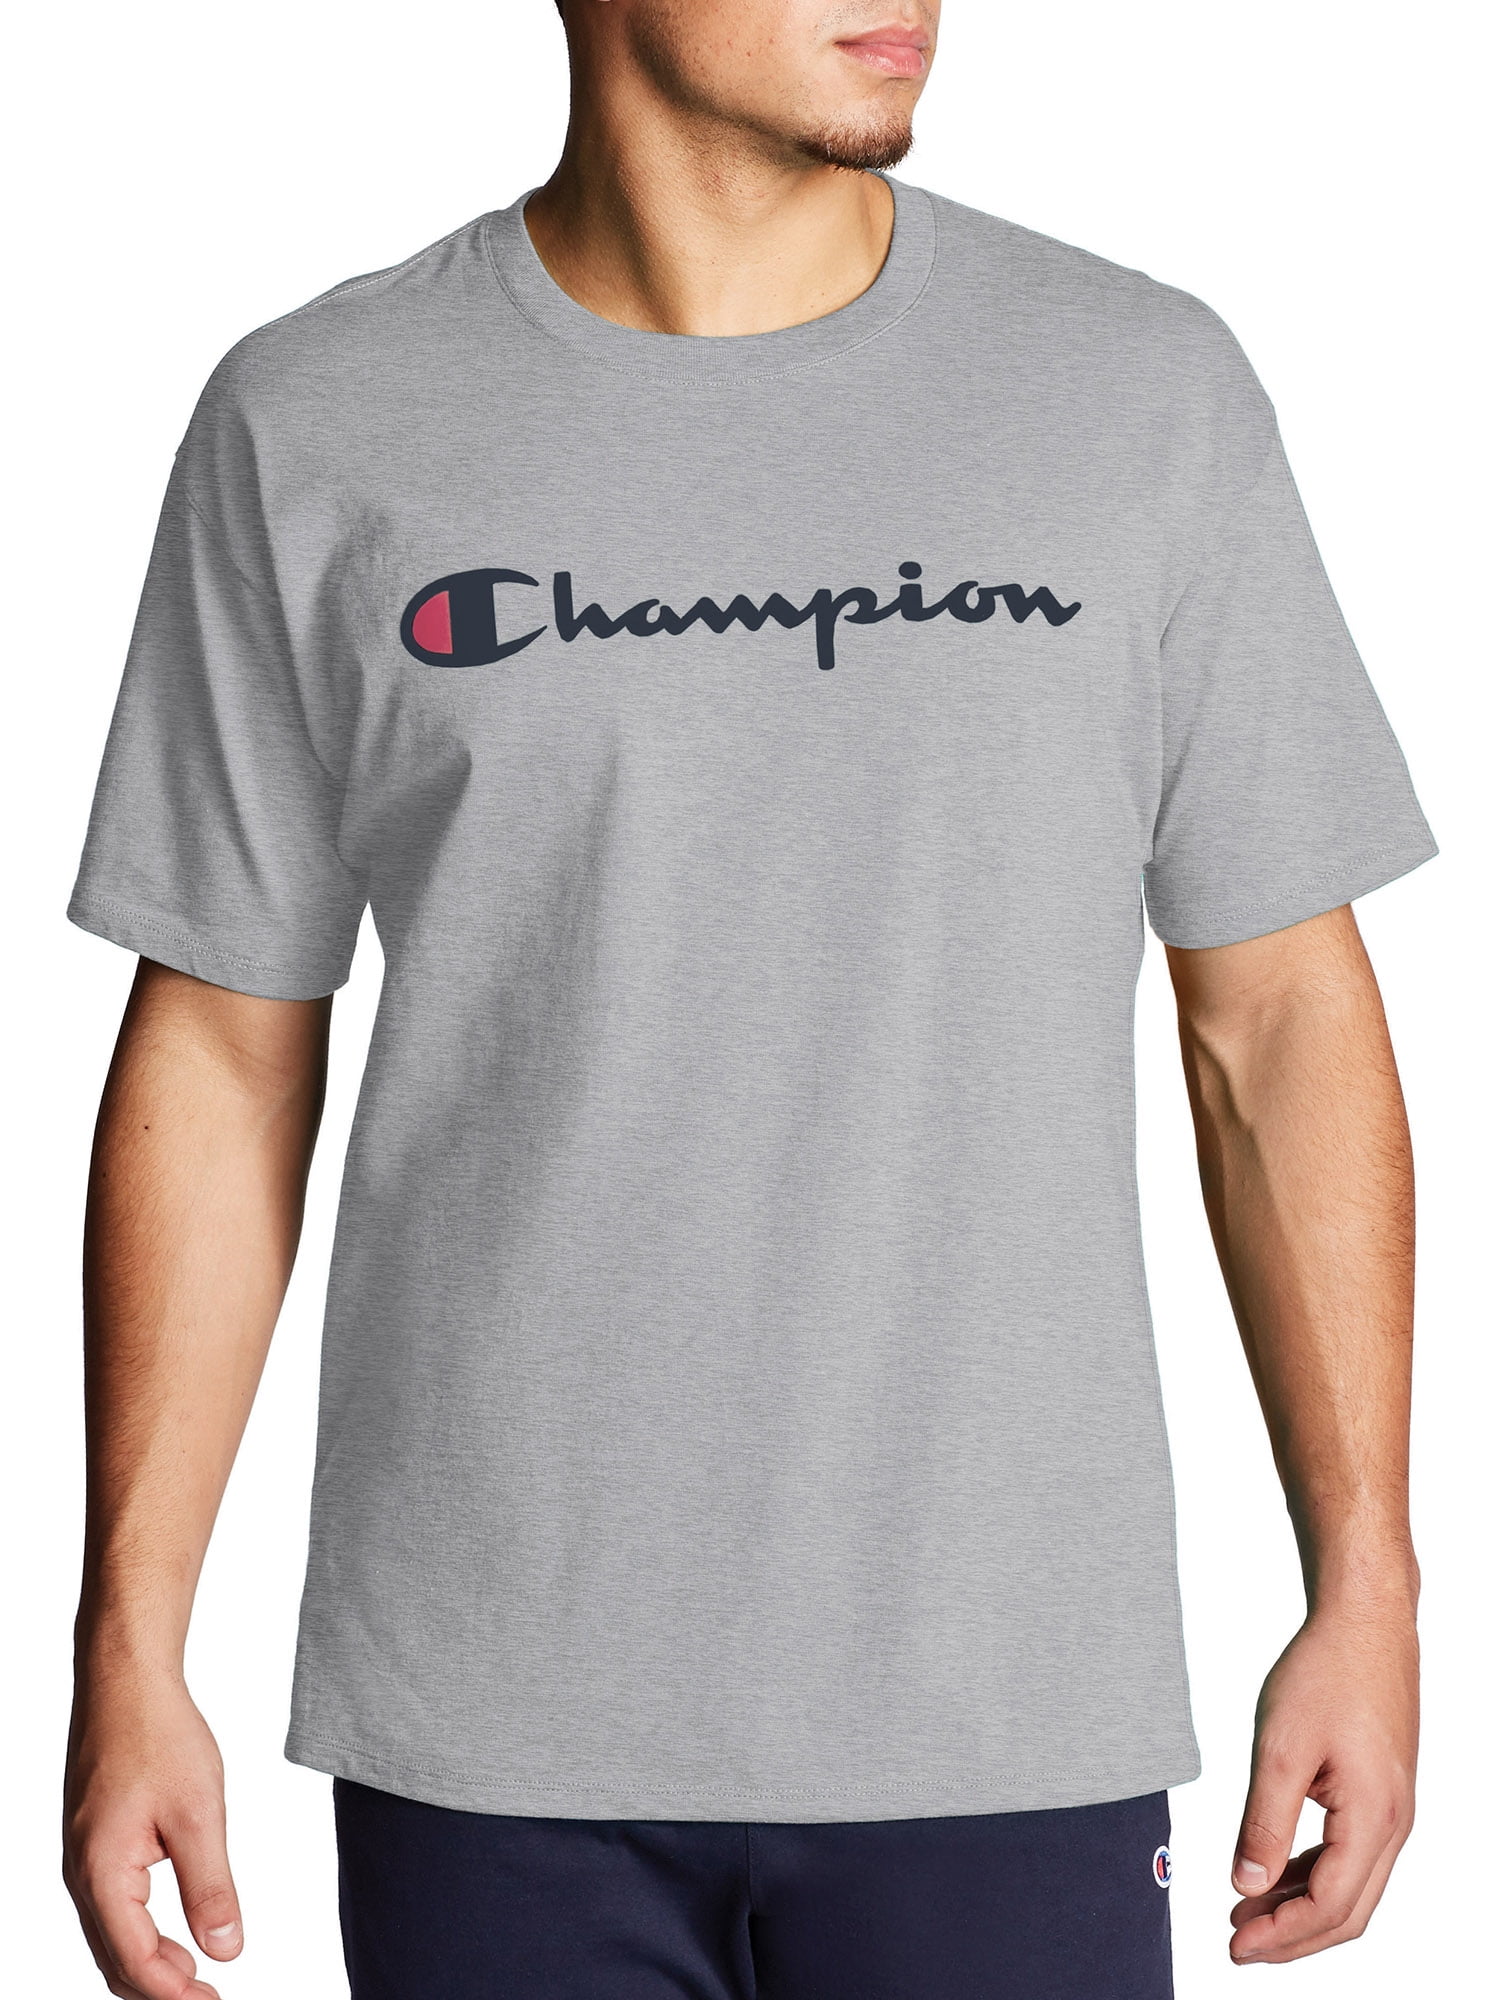 champion shirts walmart